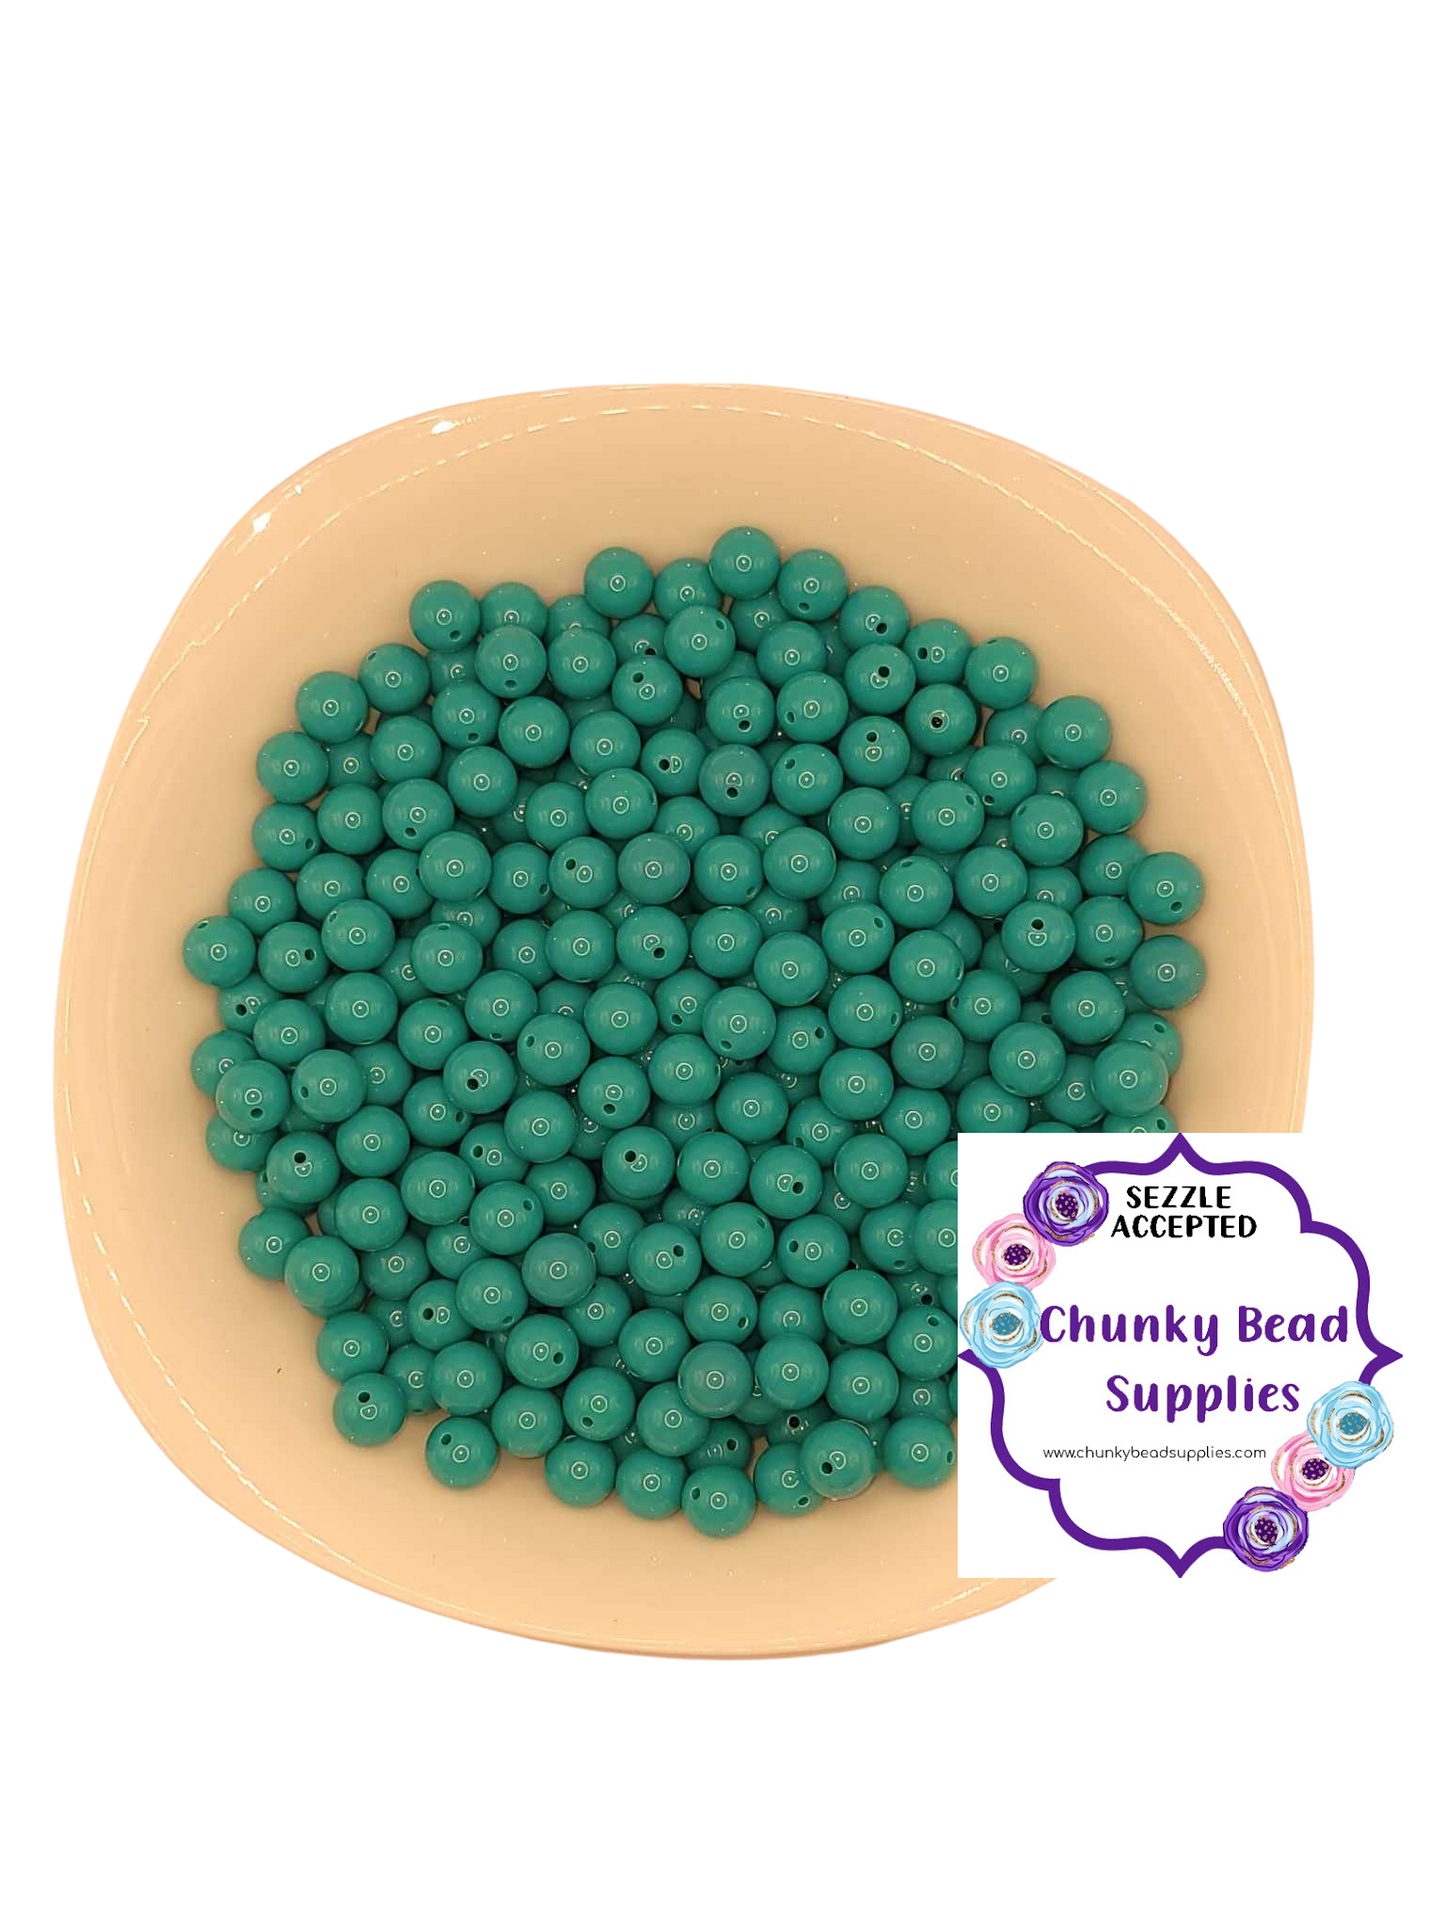 Abalorios acrílicos sólidos "verde azulado" de 12 mm, suministros de cuentas gruesas CBS, cuentas de chicle, cuentas de chicle gruesas